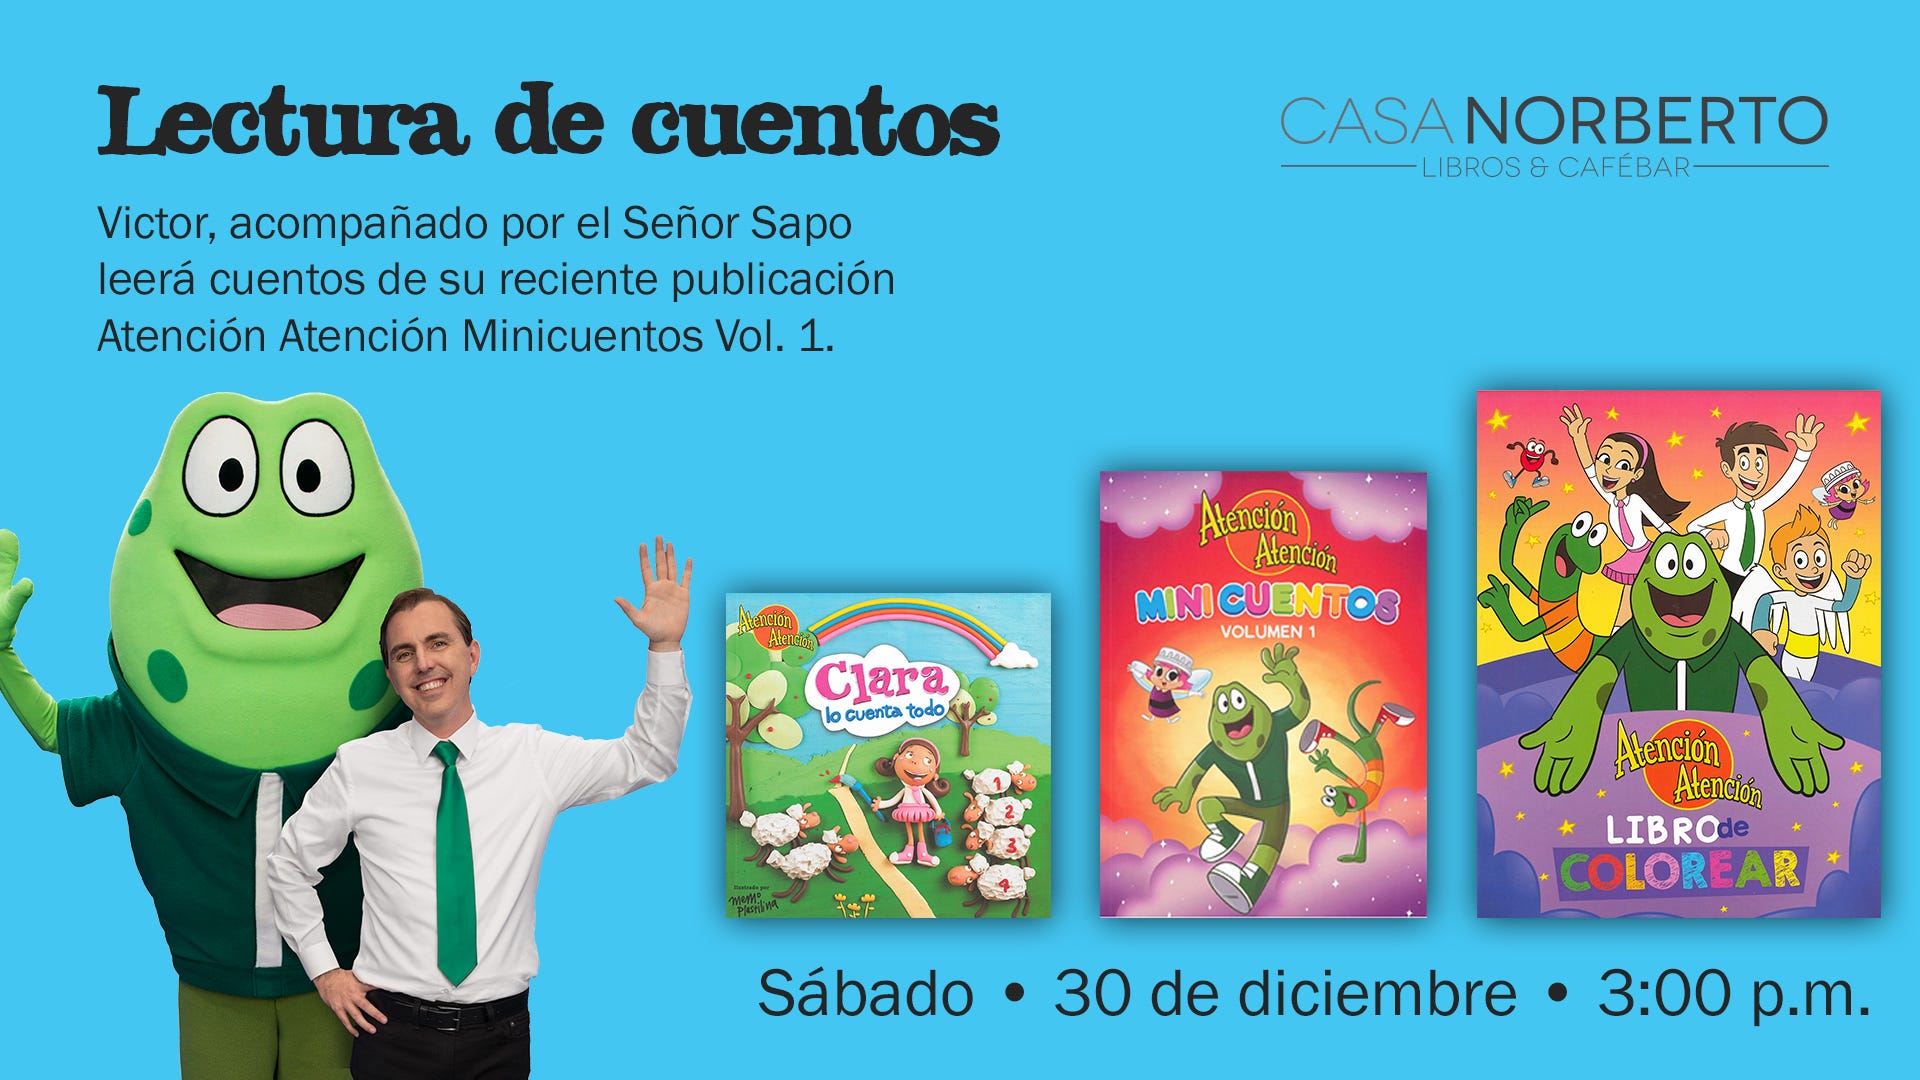 Víctor, junto al Sr. Sapo, leerá cuentos de Atención Atención este sábado,  30 de diciembre, by Casa Norberto